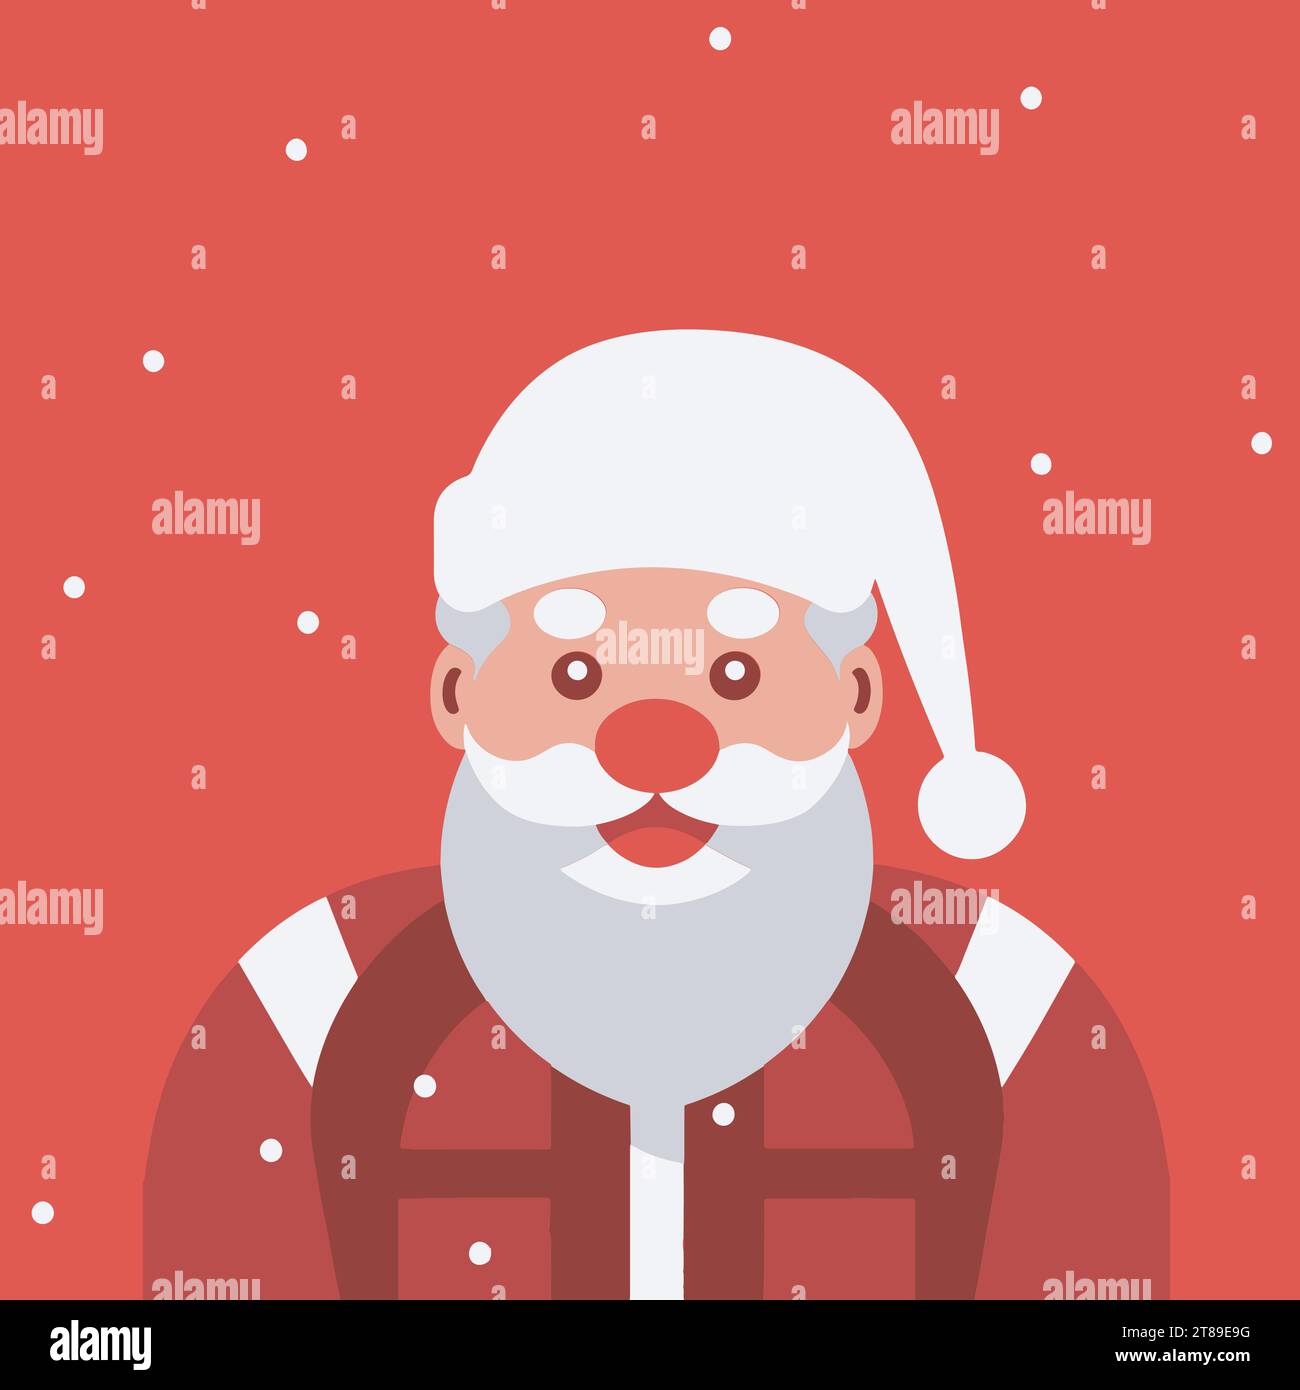 Santa-Klausel Gesicht mit Bart und Hut. Vater Frost Kopf Zeichentrickfigur Illustration. Isoliert auf weißem Hintergrund. Niedliches Weihnachtssymbol. Stock Vektor